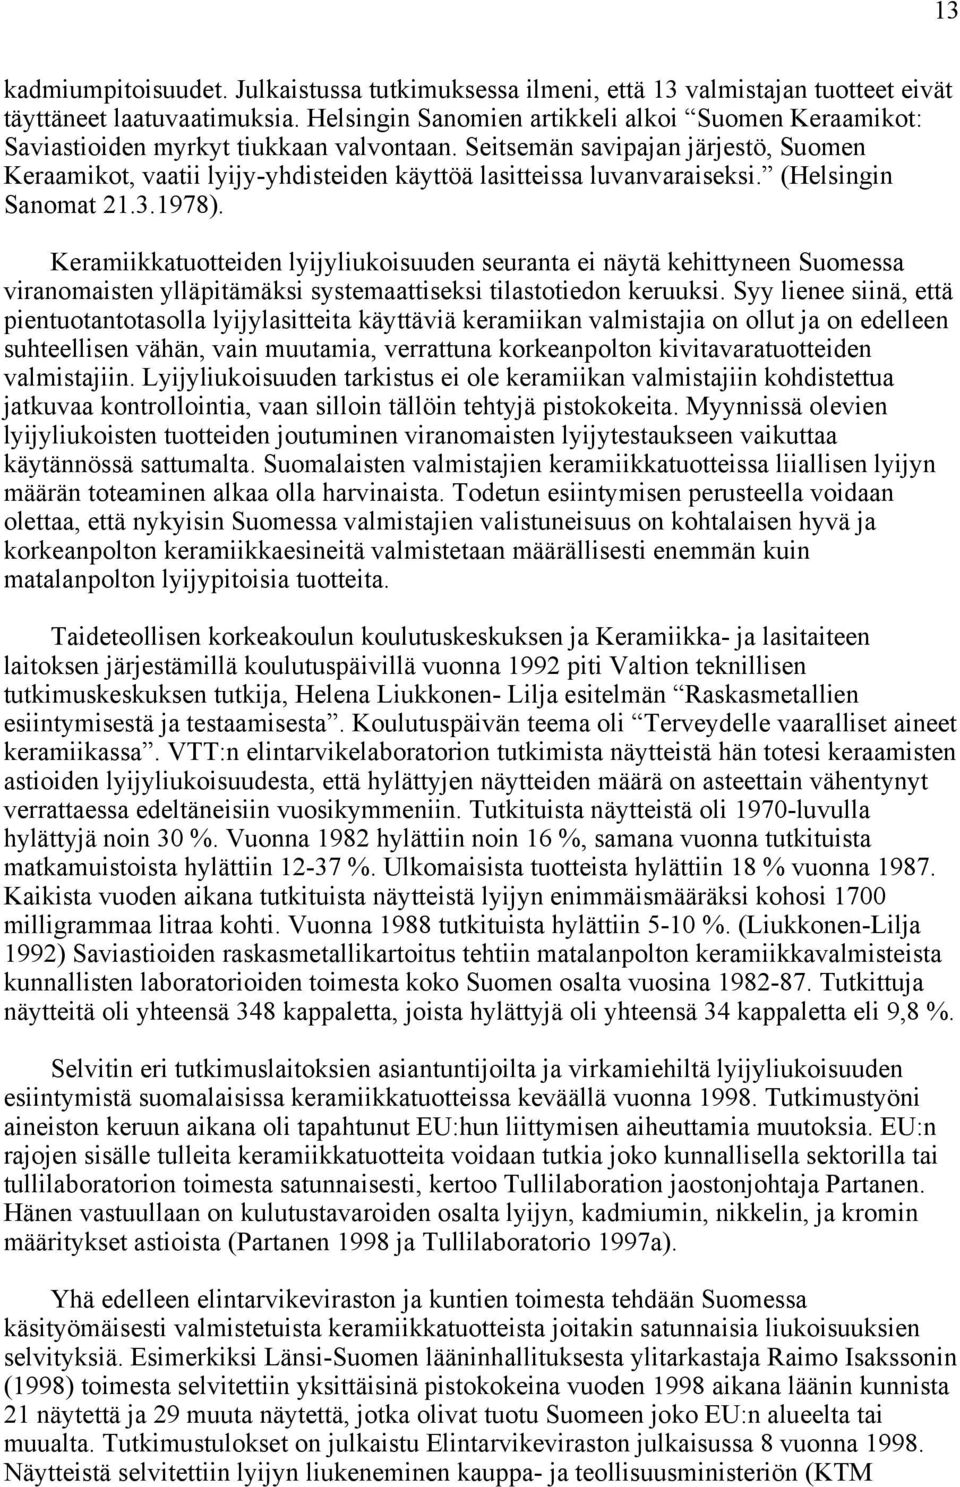 Seitsemän savipajan järjestö, Suomen Keraamikot, vaatii lyijy-yhdisteiden käyttöä lasitteissa luvanvaraiseksi. (Helsingin Sanomat 21.3.1978).